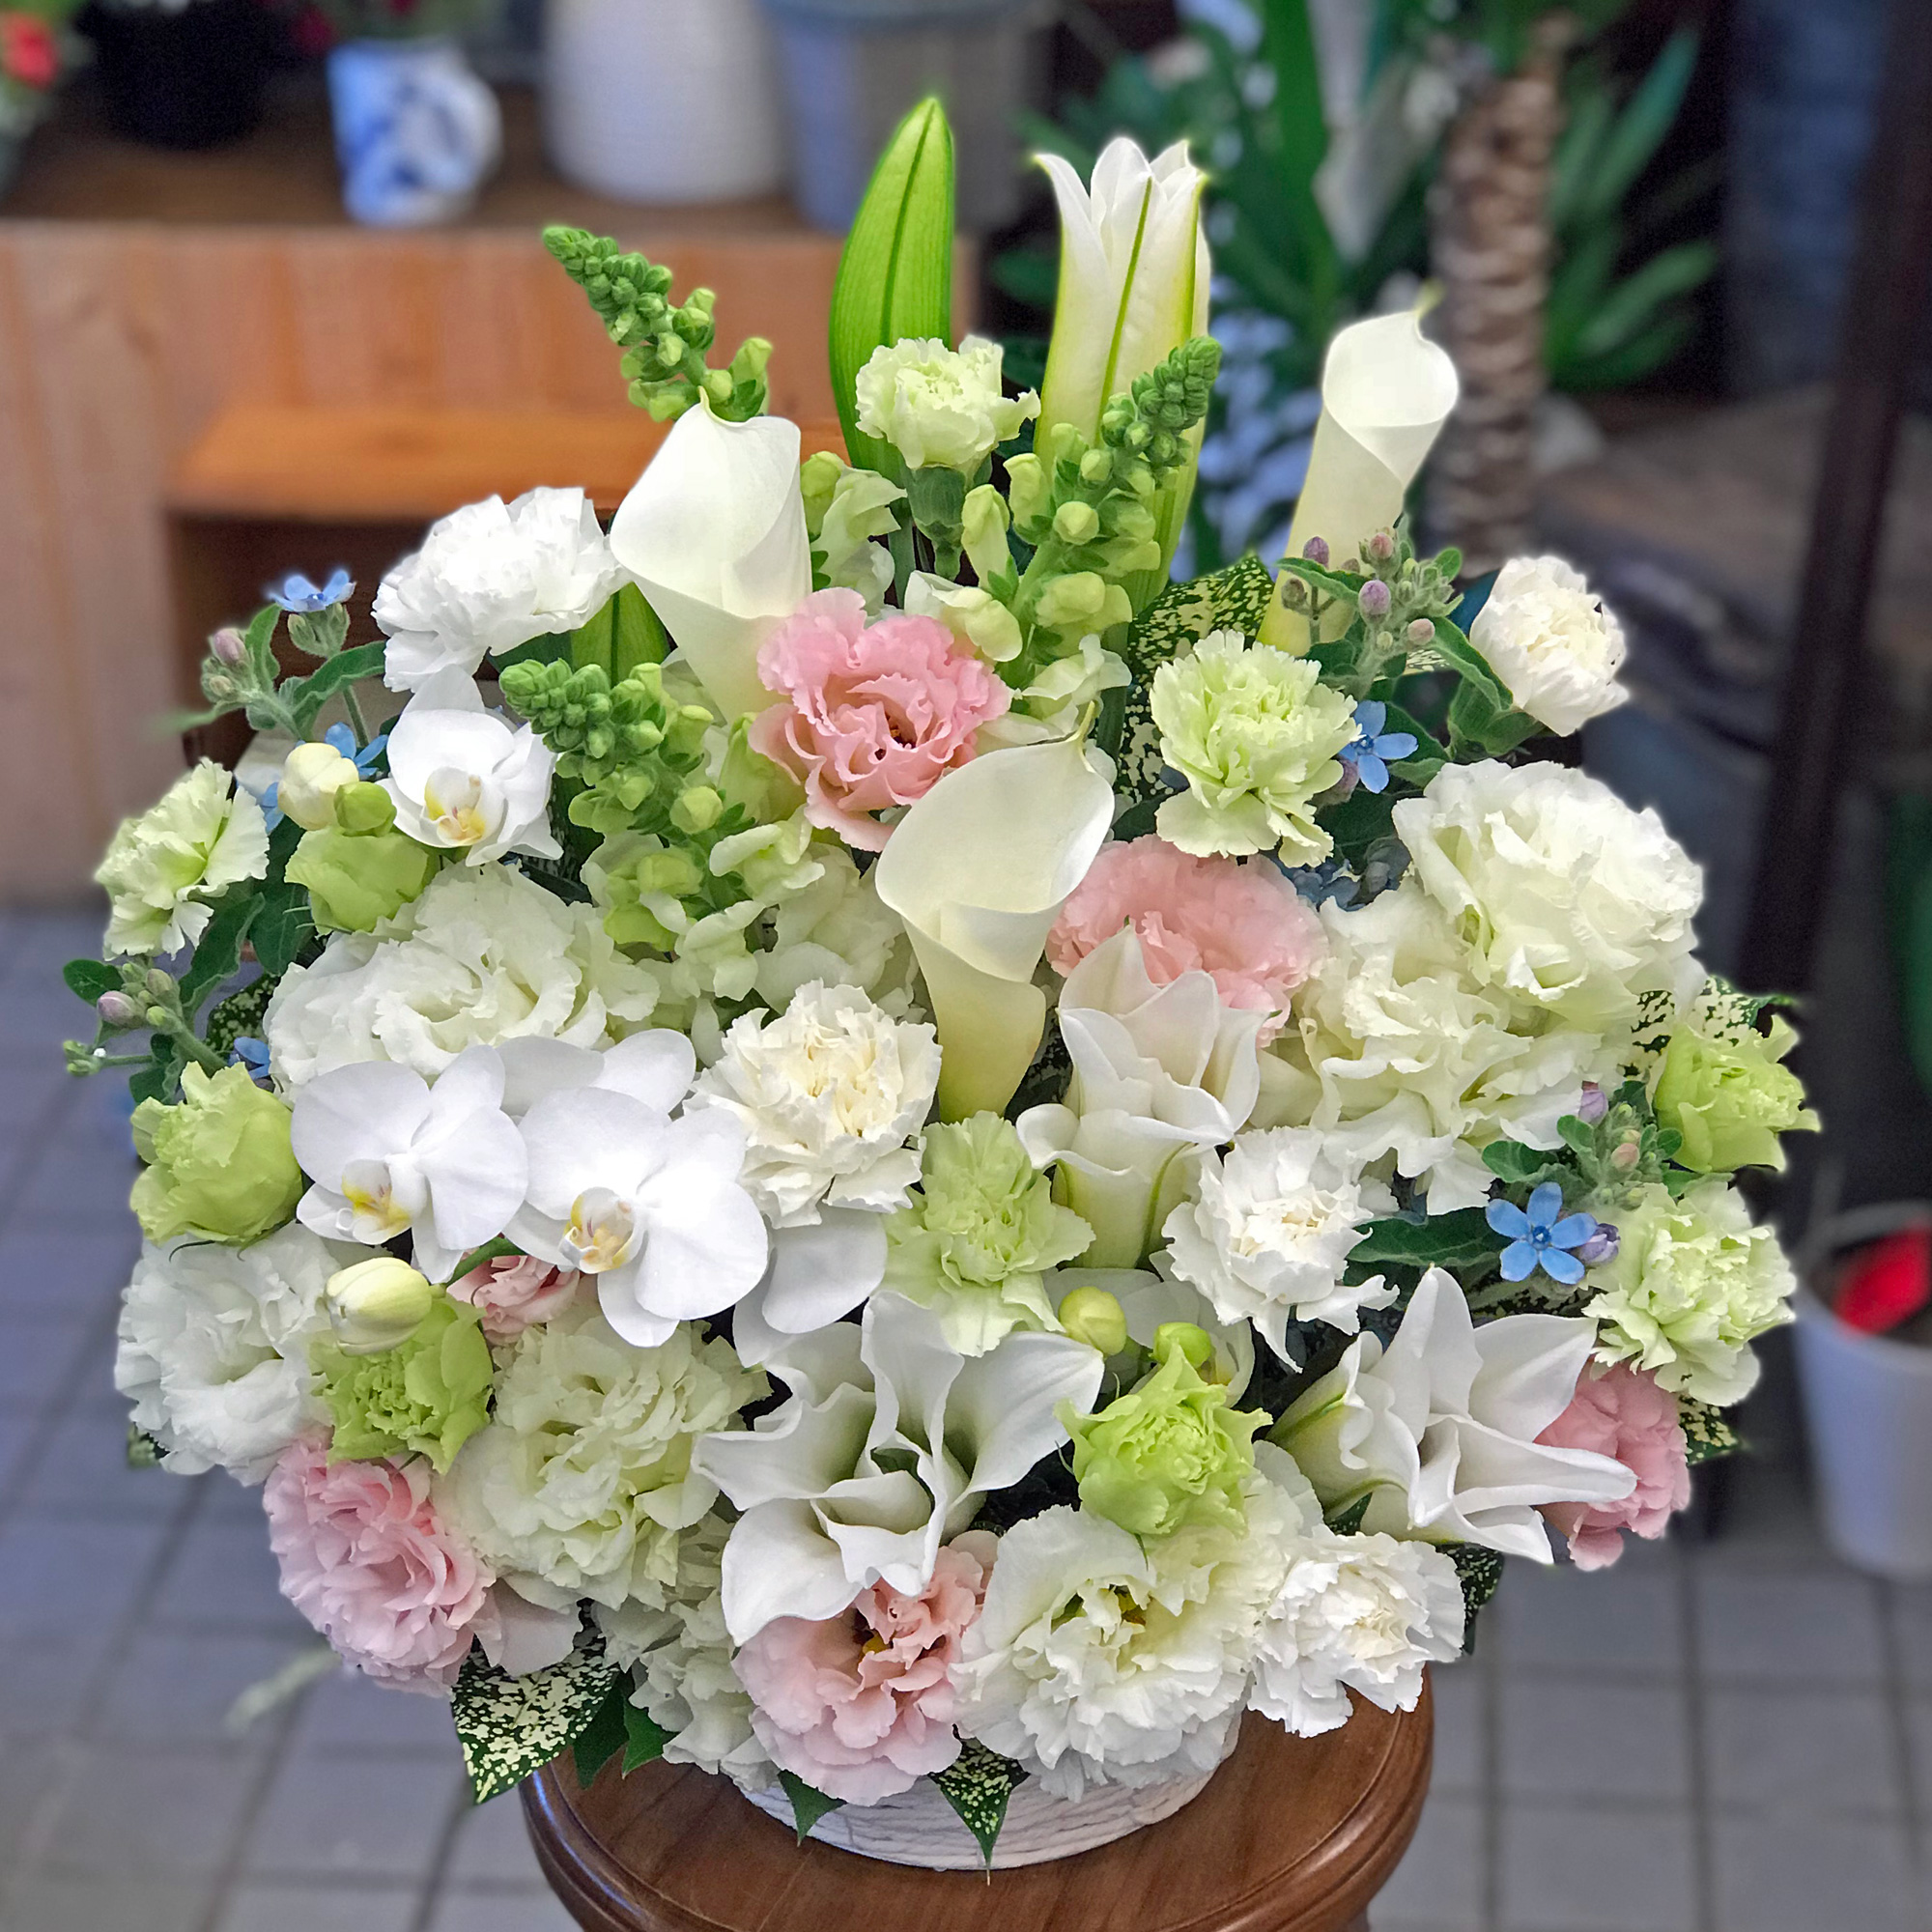 喪中お見舞い はやっぱりお花で 大花園 だいかえん 東京都大田区山王大森の花屋です